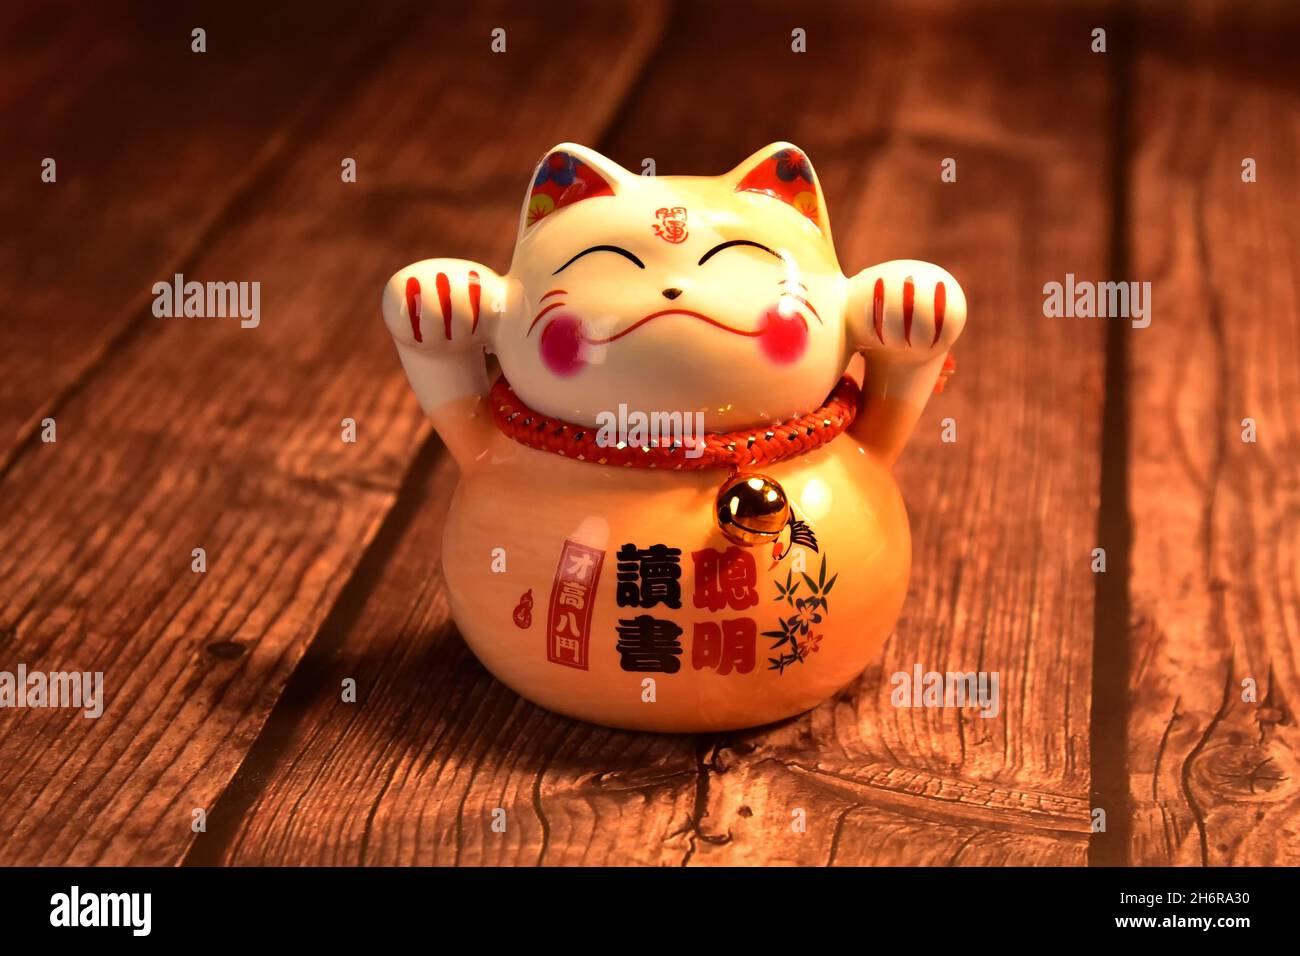 Eine japanische Glückskatze (Maneki neko) aus Porzellan auf einem rustikalen Holztisch. Stockfoto